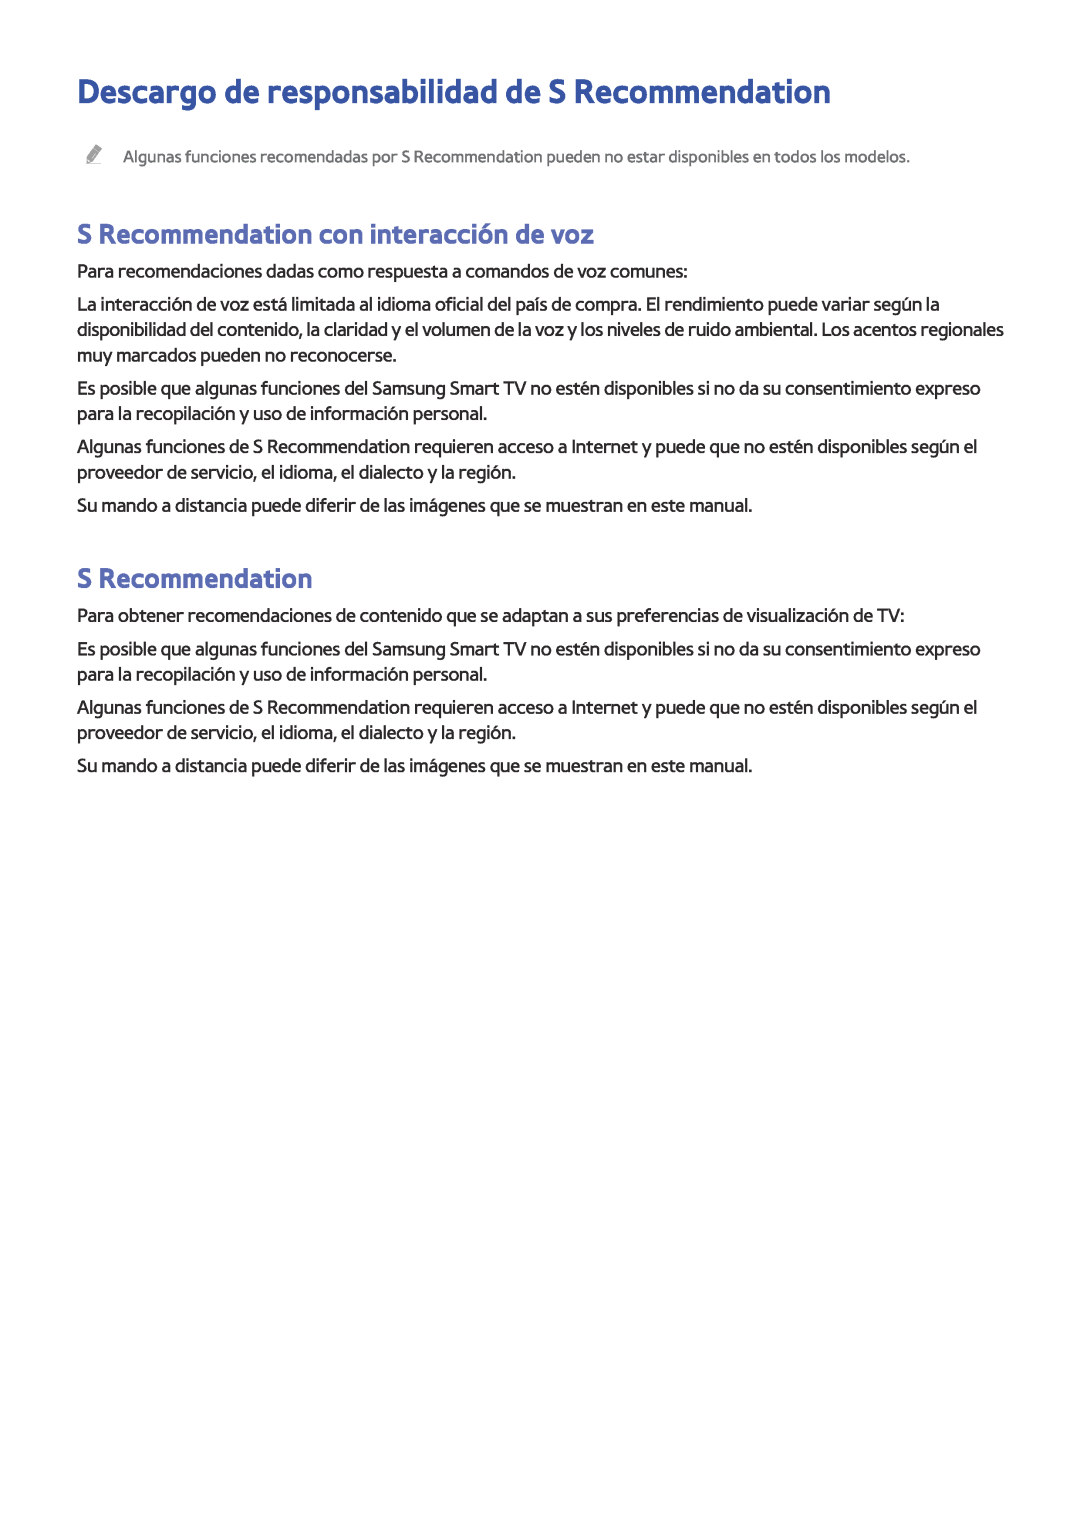 Samsung UE55JU6510UXXC manual Descargo de responsabilidad de S Recommendation, S Recommendation con interacción de voz 